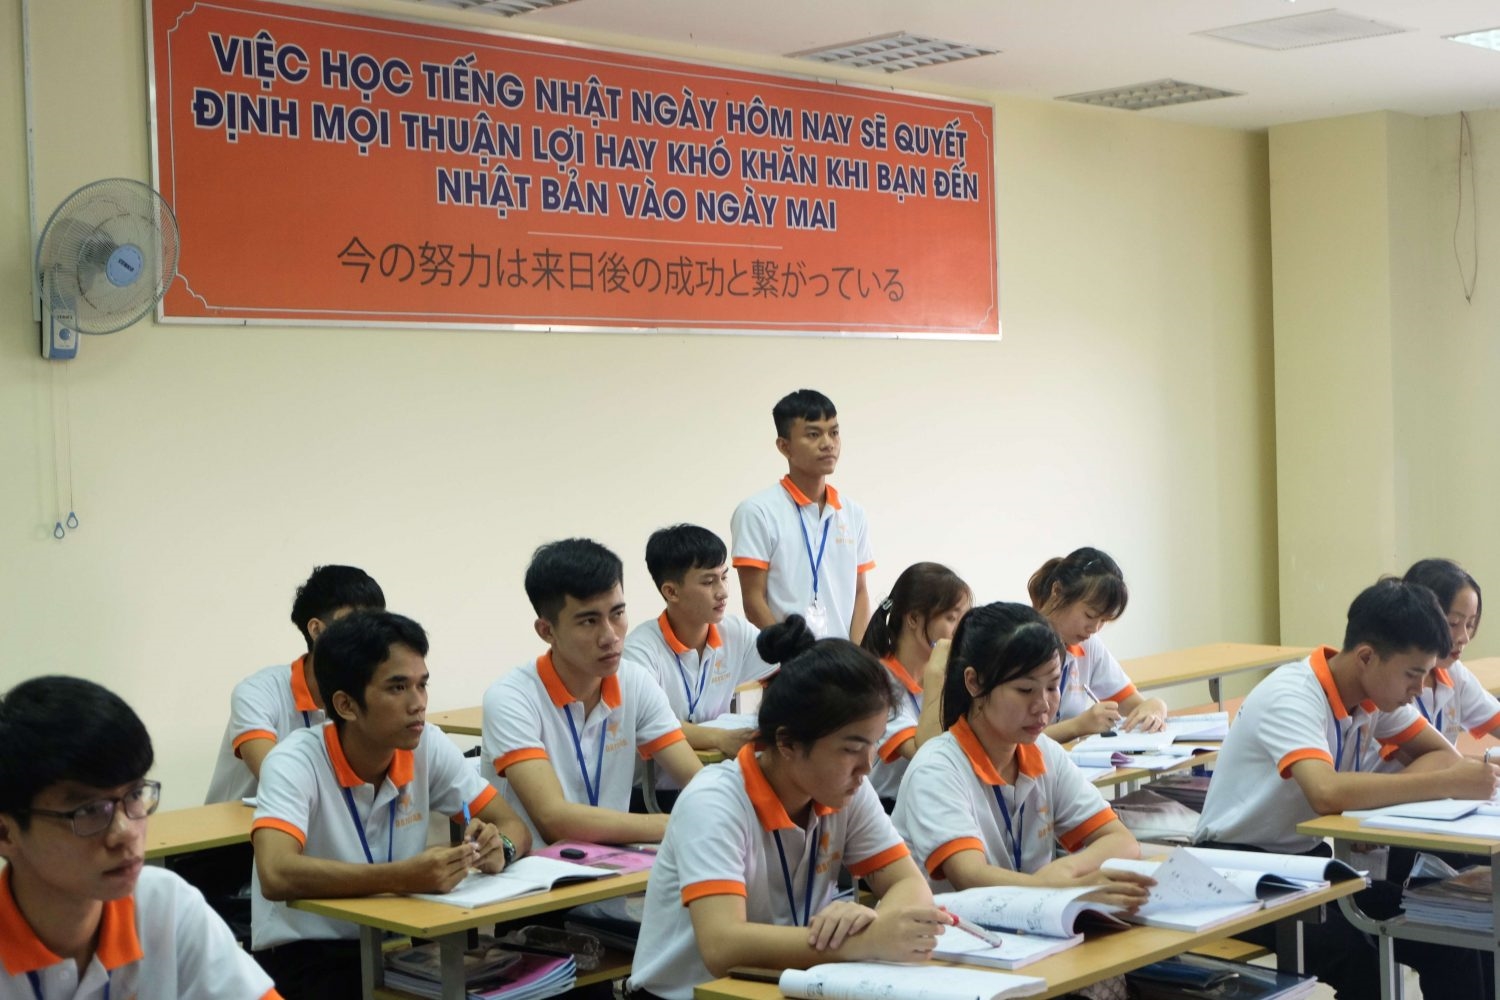 Đề án 71 còn hỗ trợ người lao động học nghề, ngoại ngữ, bồi dưỡng kiến thức cần thiết theo quy định của Luật Người lao động Việt Nam đi làm việc ở nước ngoài theo hợp đồng. (Ảnh minh họa)